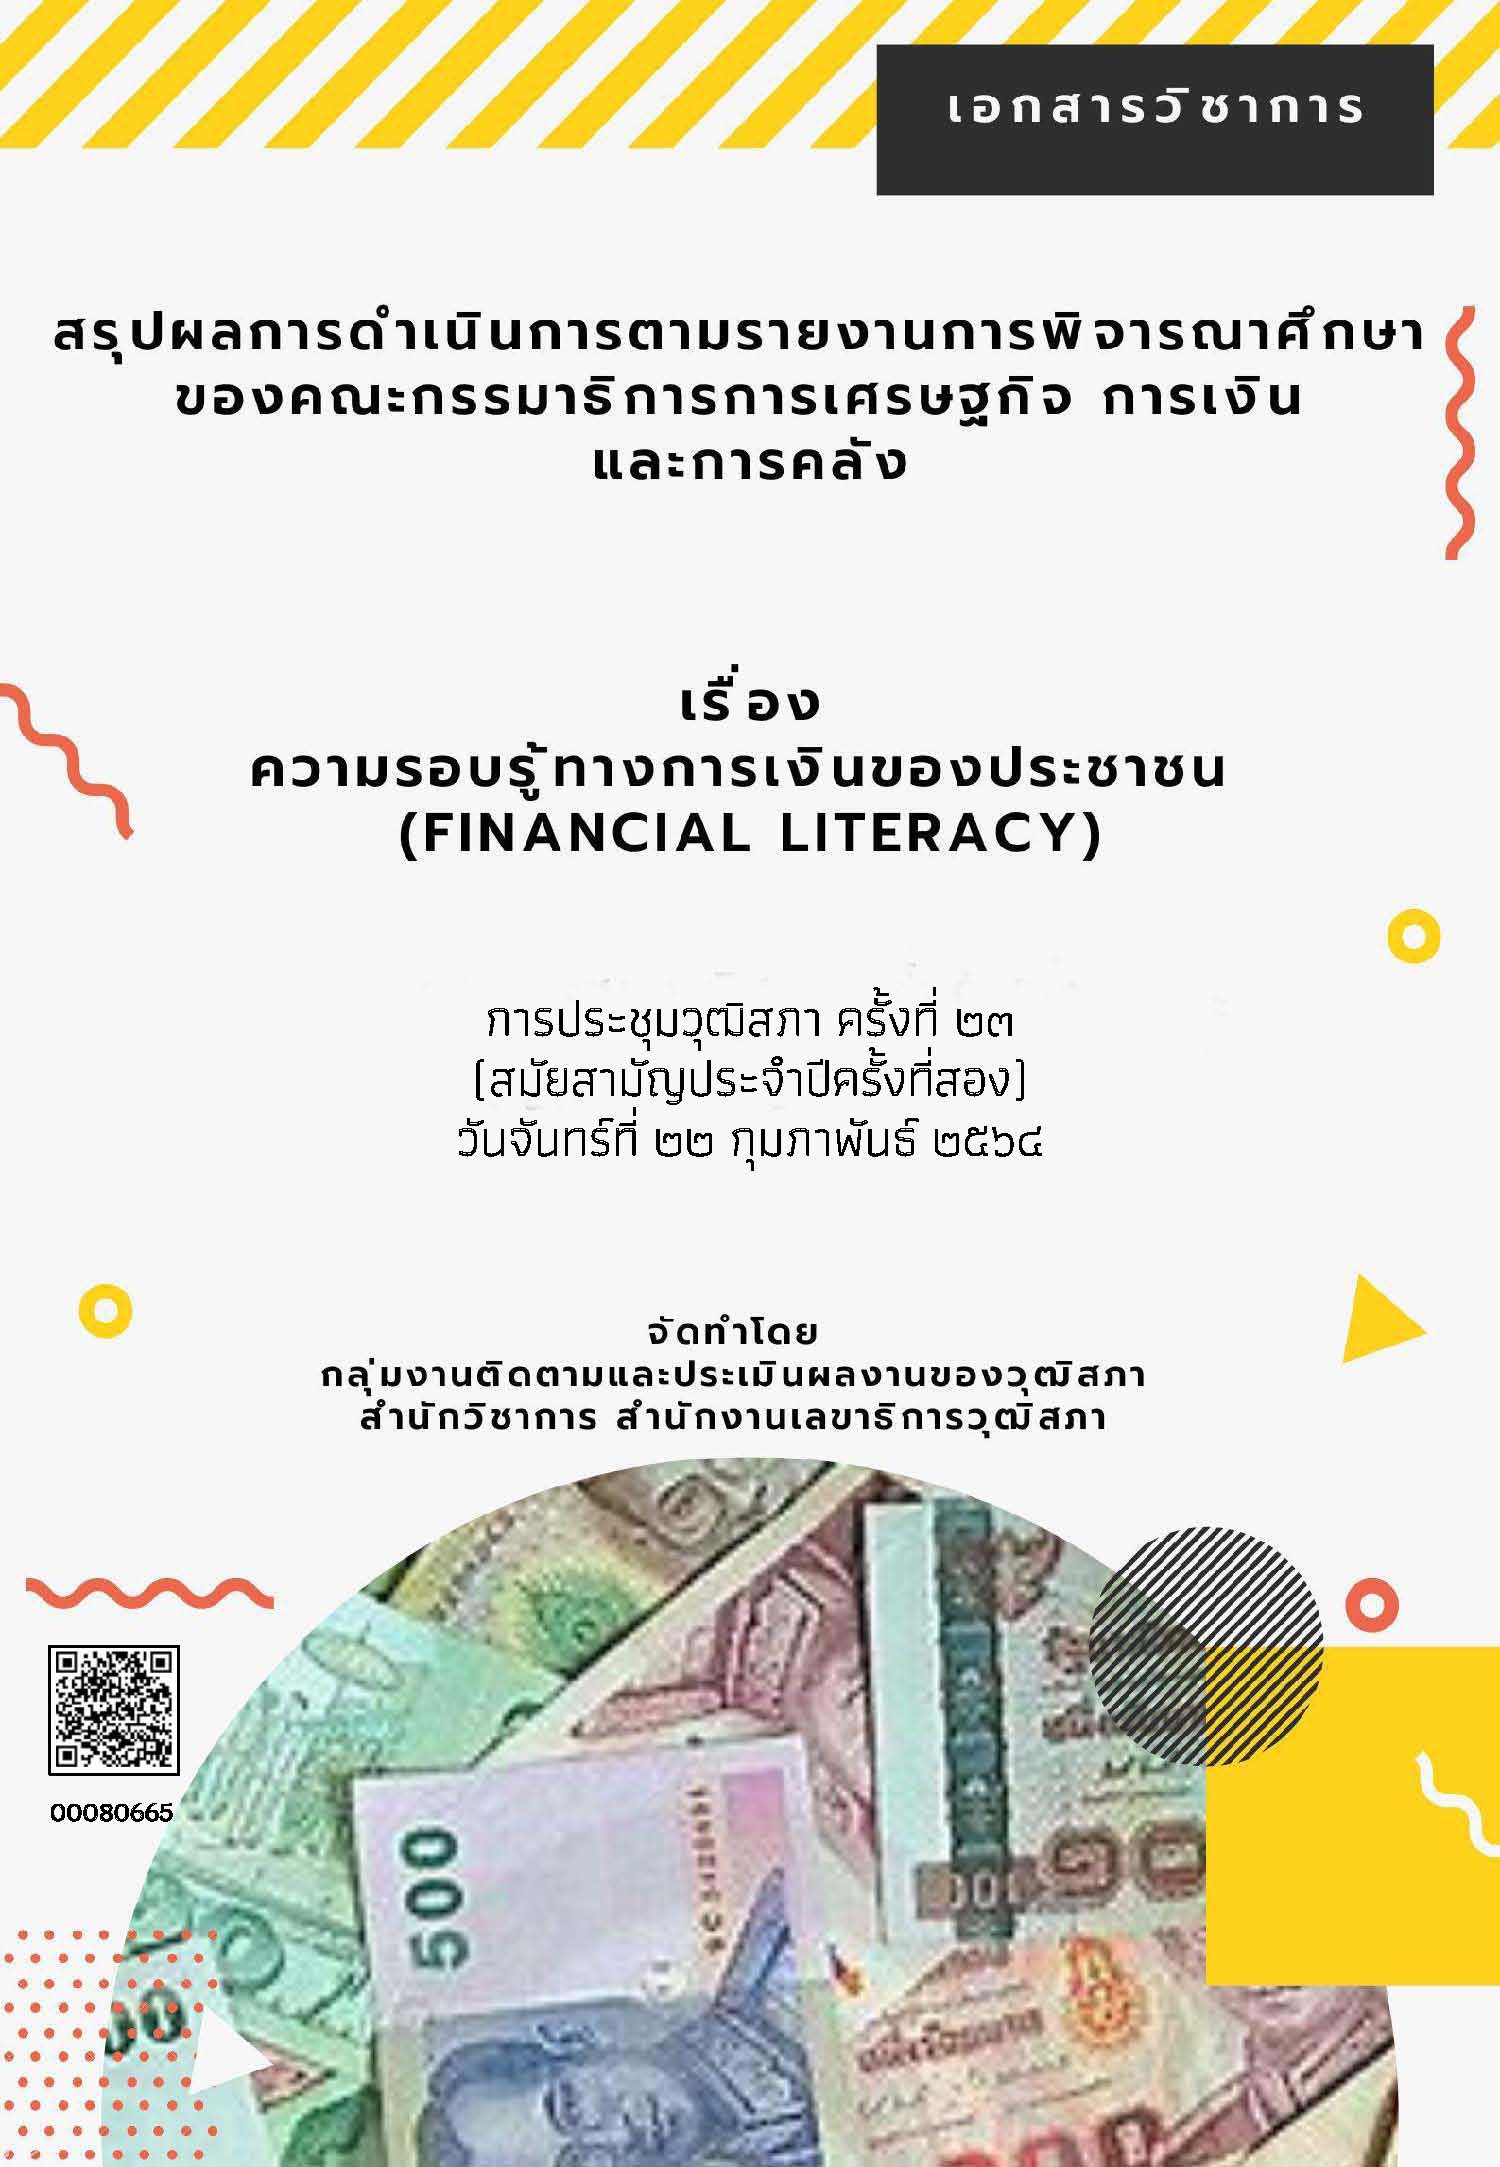 ความรอบรู้ทางการเงินของประชาชนไทย (Financial Literacy)